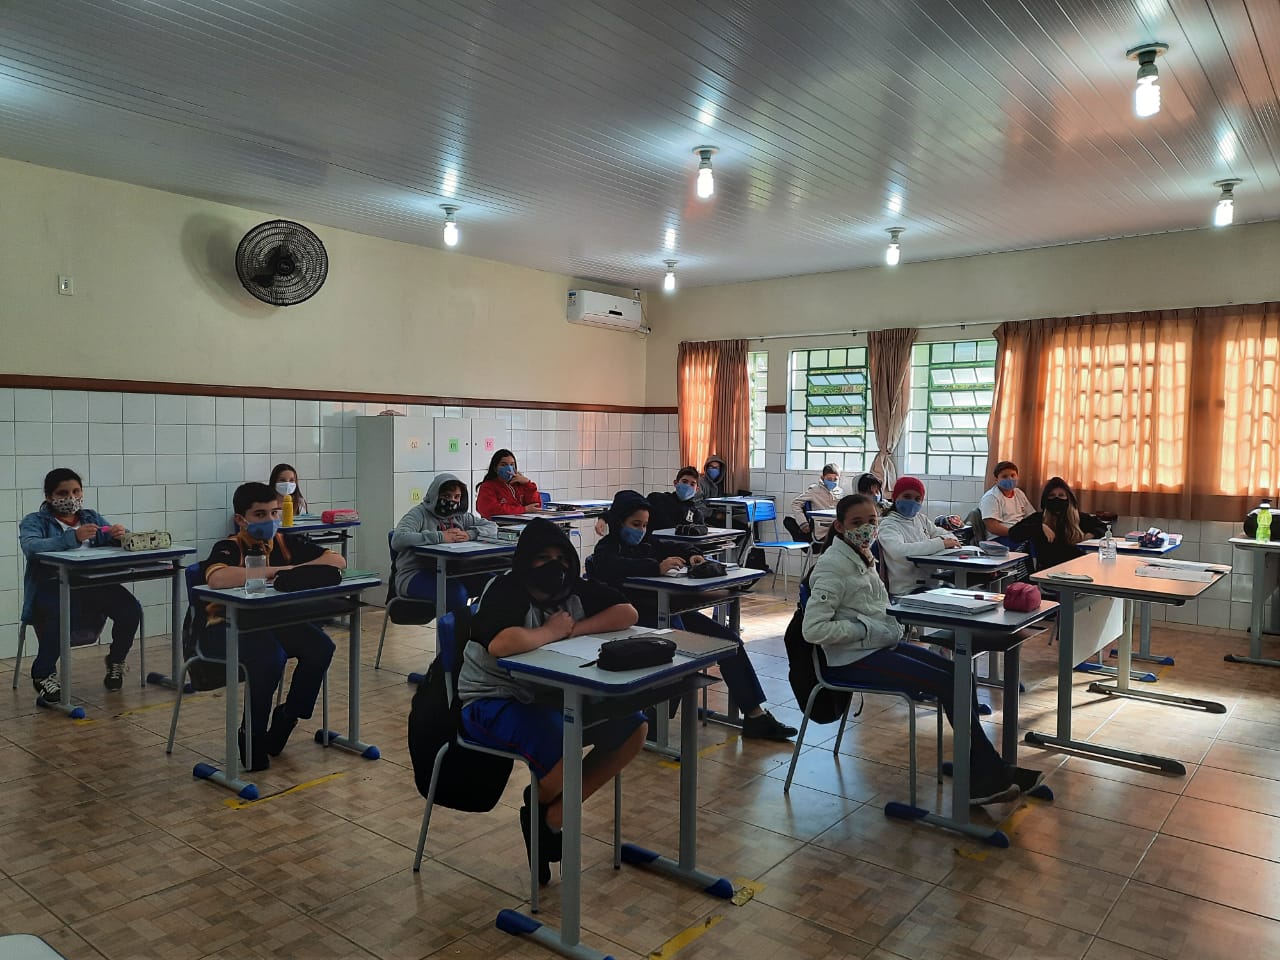 Vereadora questiona "obrigatoriedade" do retorno às aulas presenciais em Criciúma